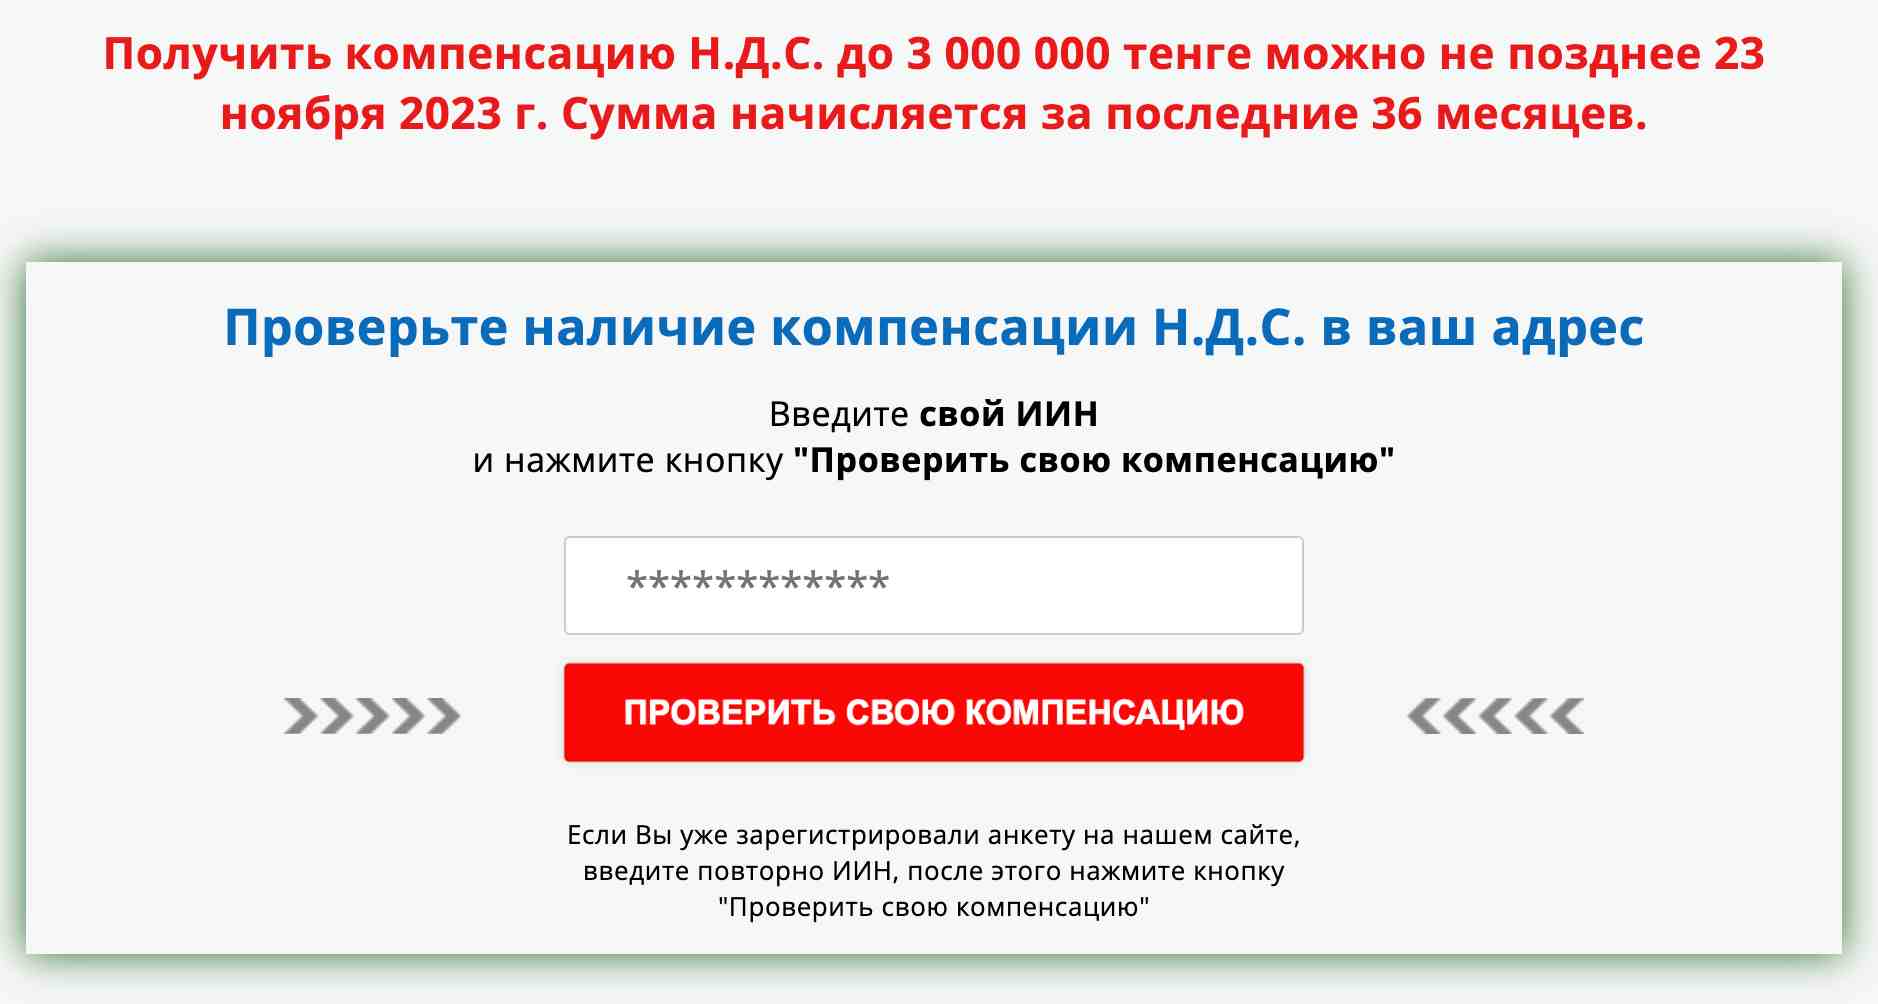 ОКЦ ВНДС Казахстан — действительно возвращает деньги или это очередной проект аферистов?